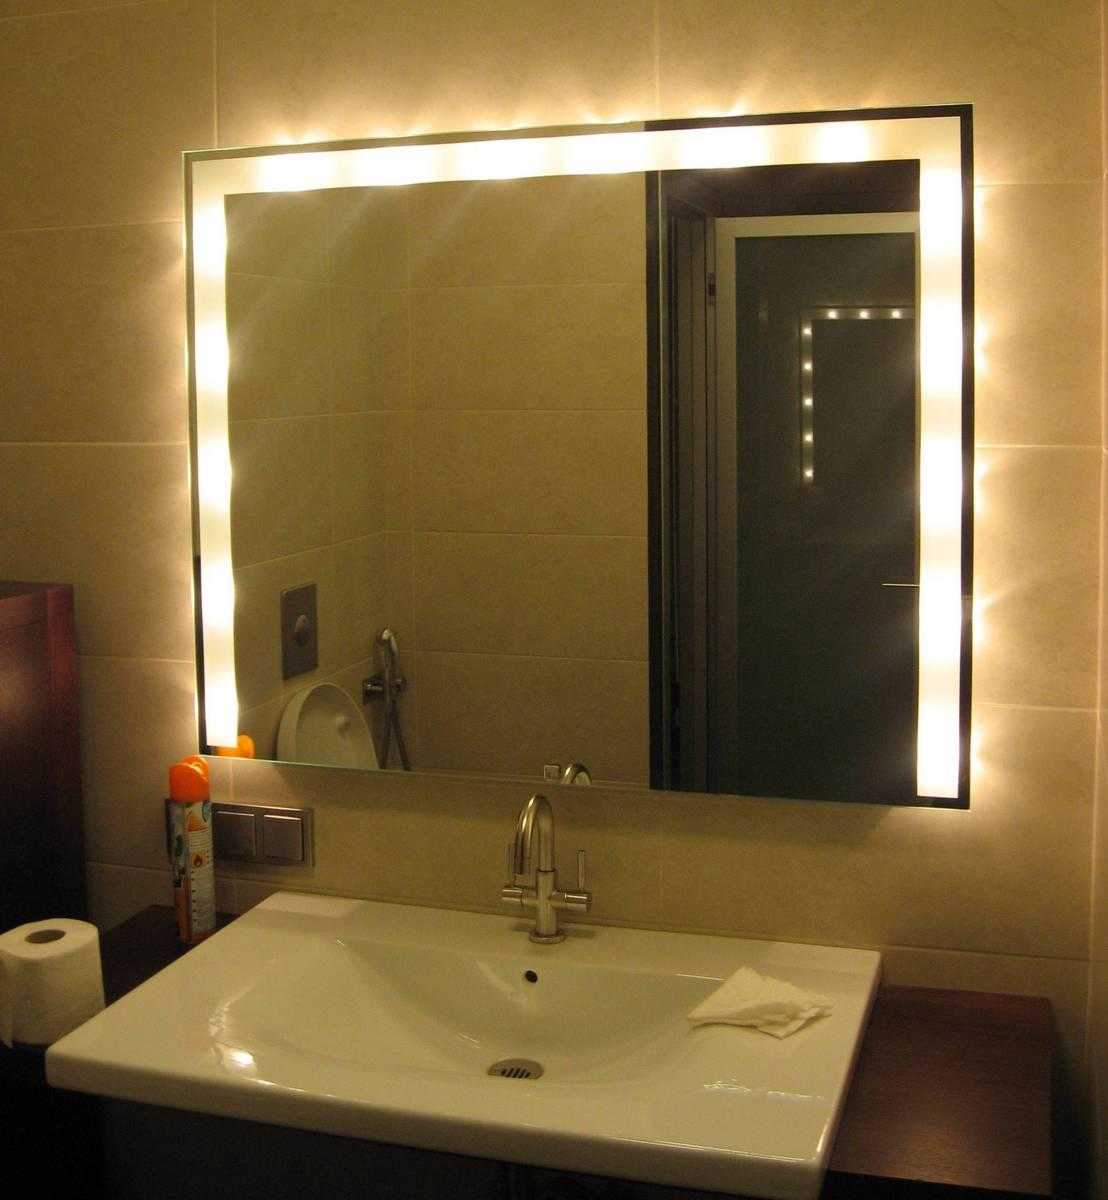 Виды подсветки для зеркала в ванной, варианты установки и подключения 19 - ДиванеТТо